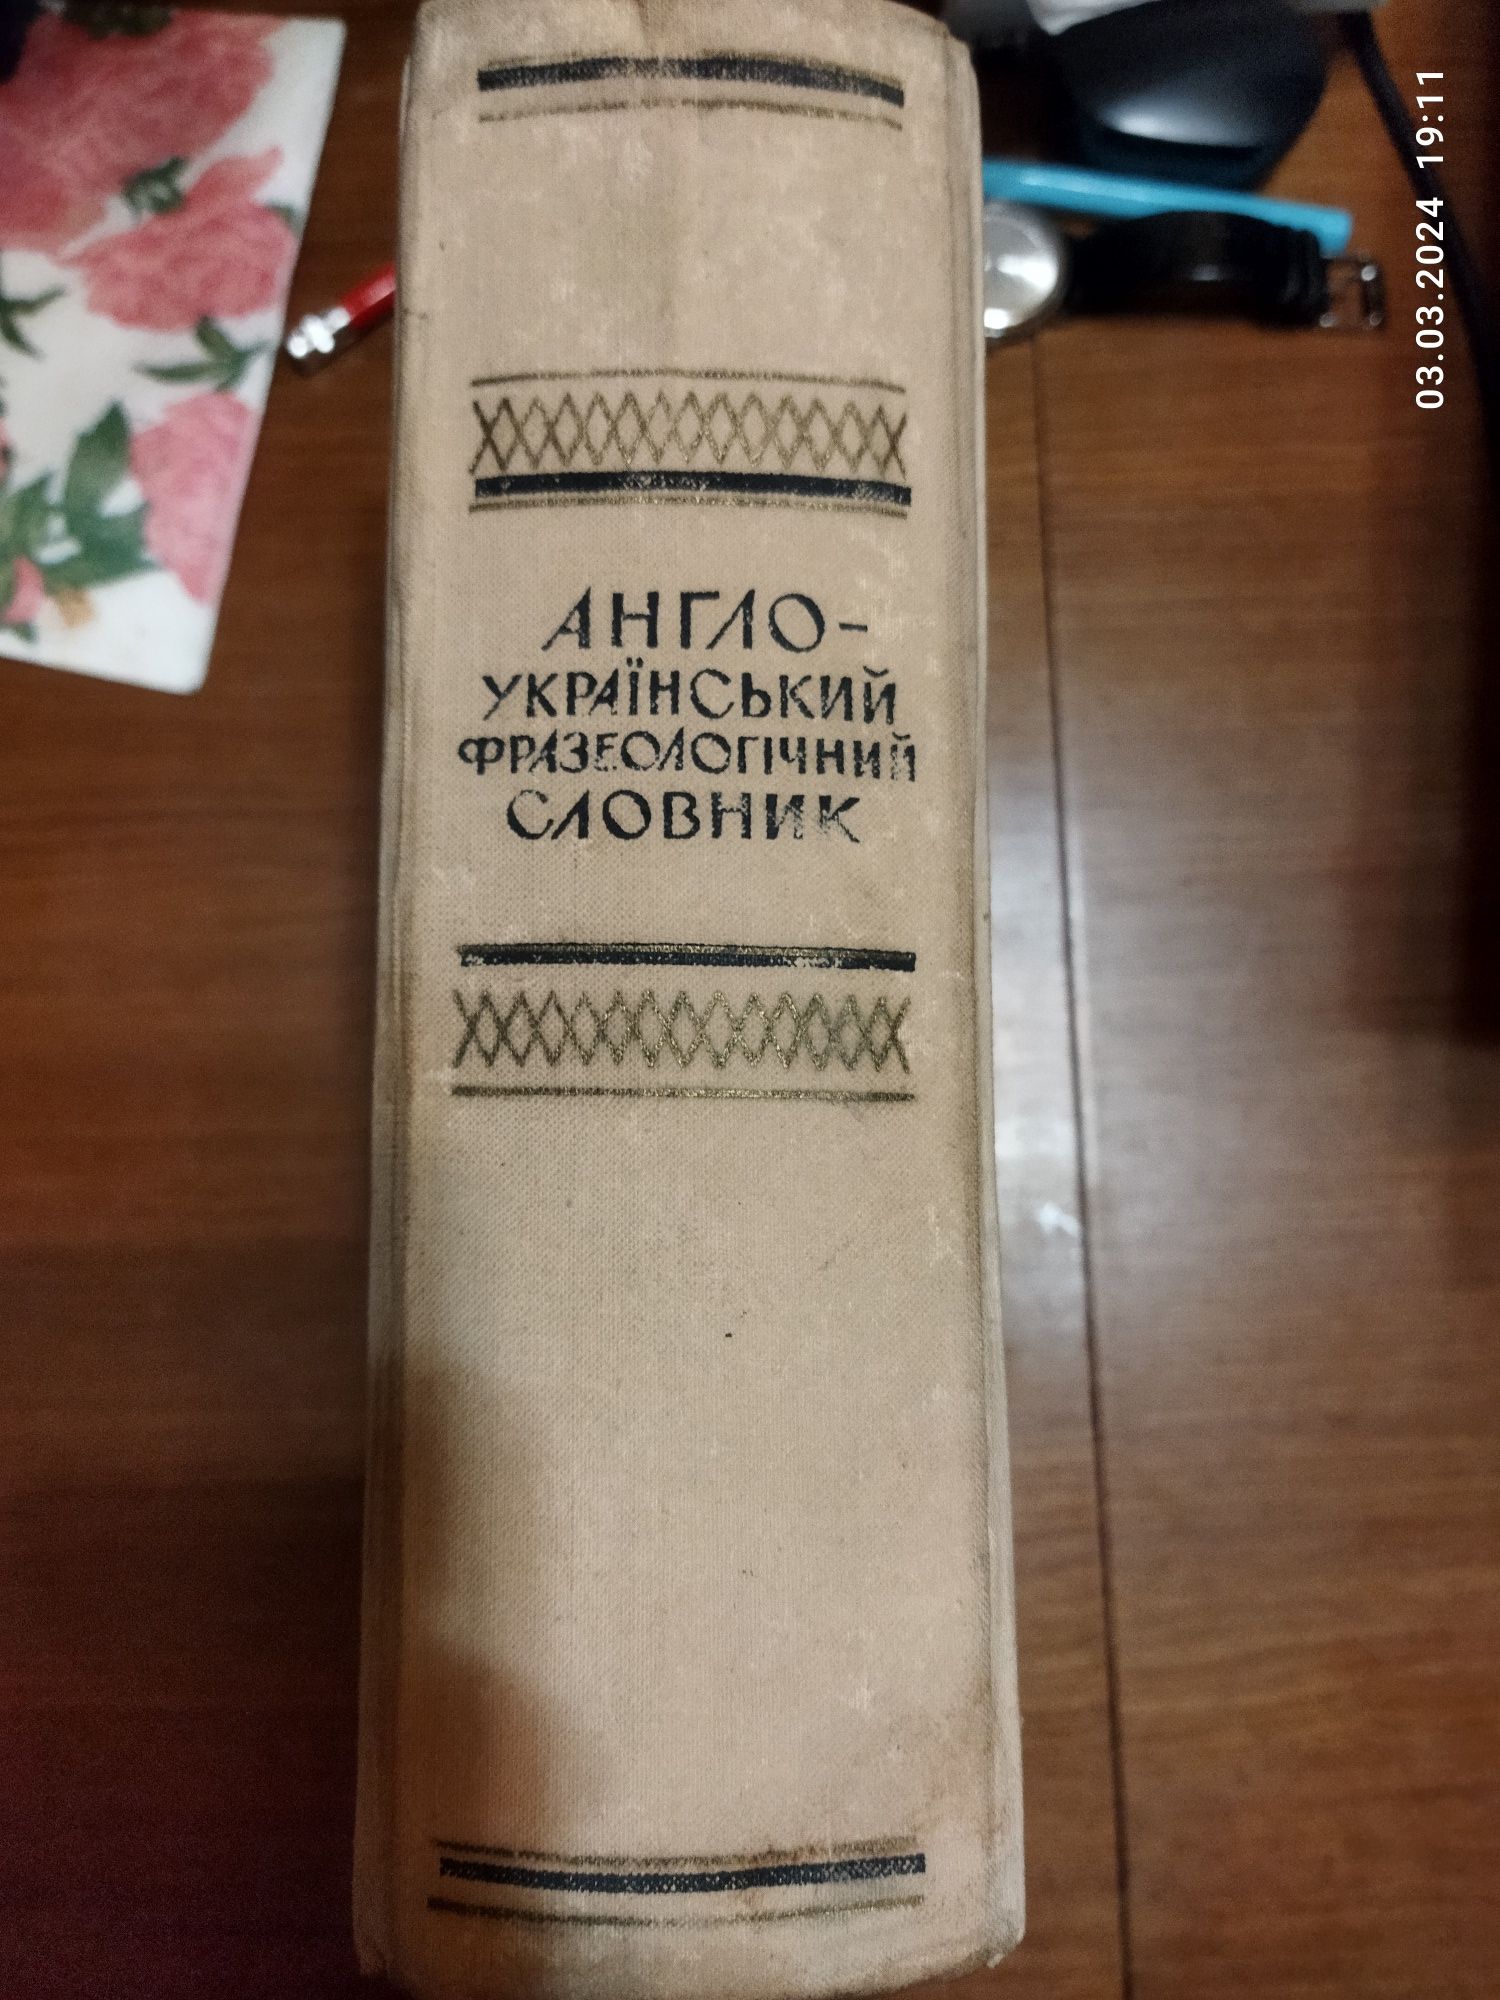 Баранцев К. Т. Англо-український фразеологічний словник, 1969, 1052 с.